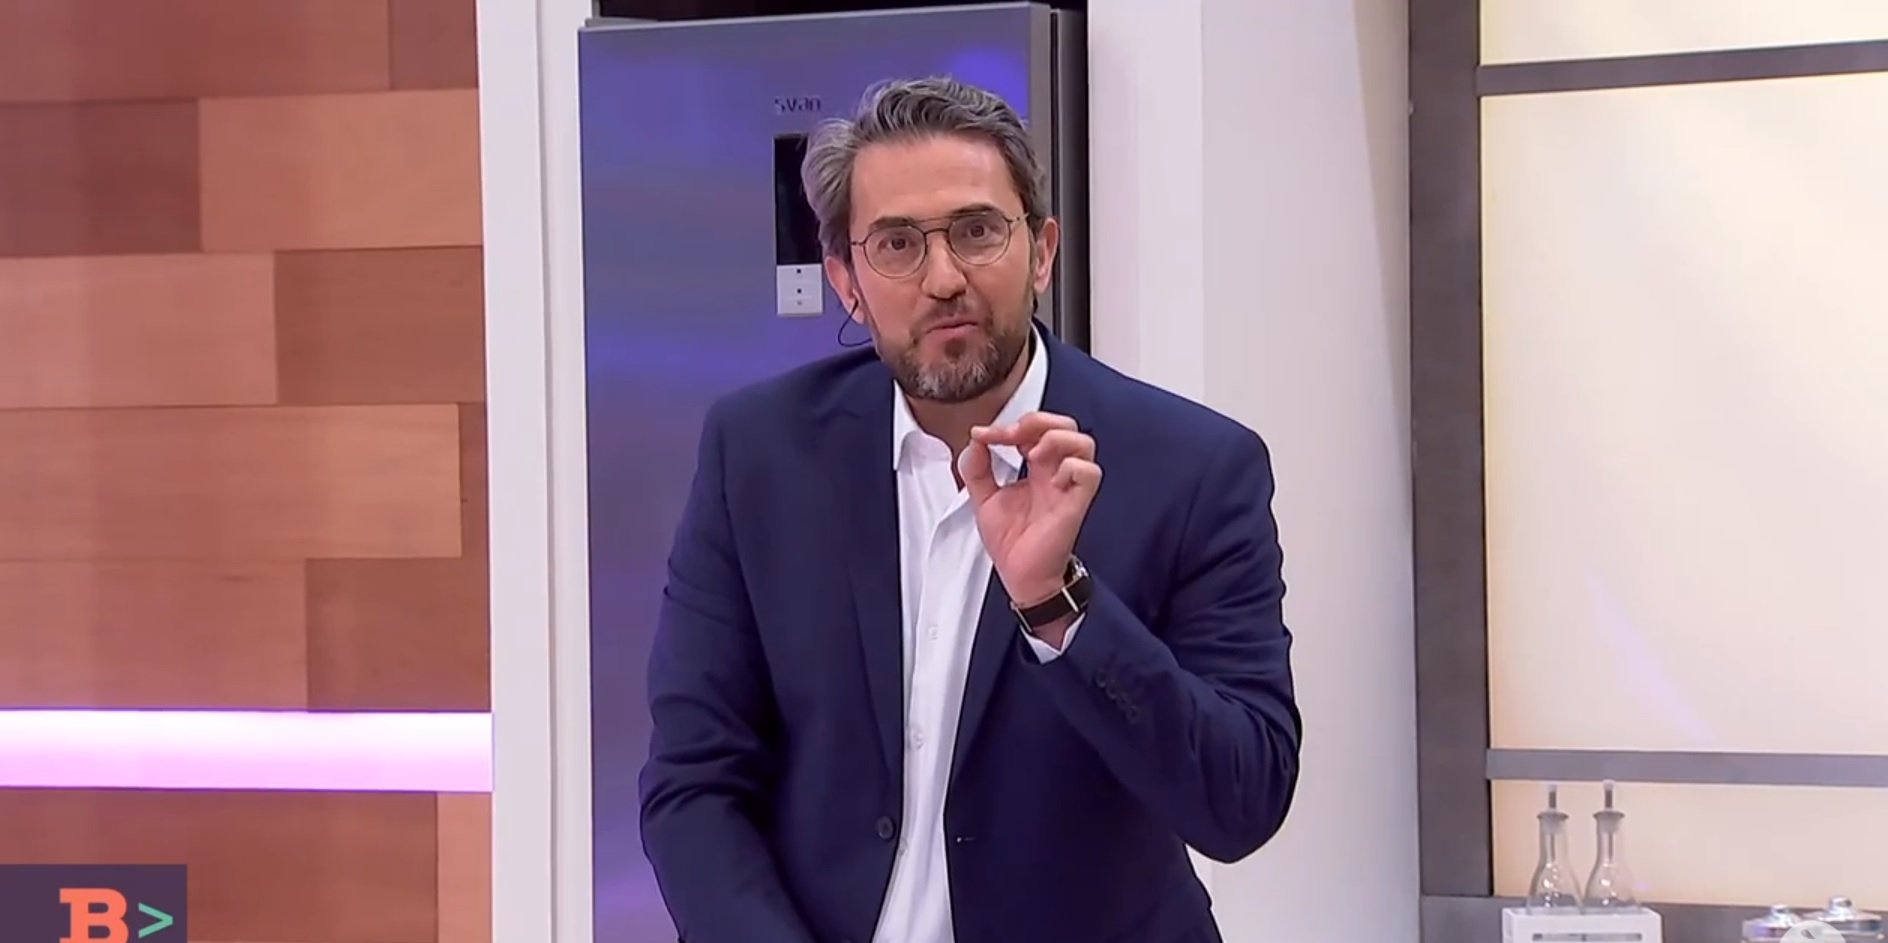 Máximo Huerta ja no renega del nom català: a la TV parla català i es diu "Màxim"